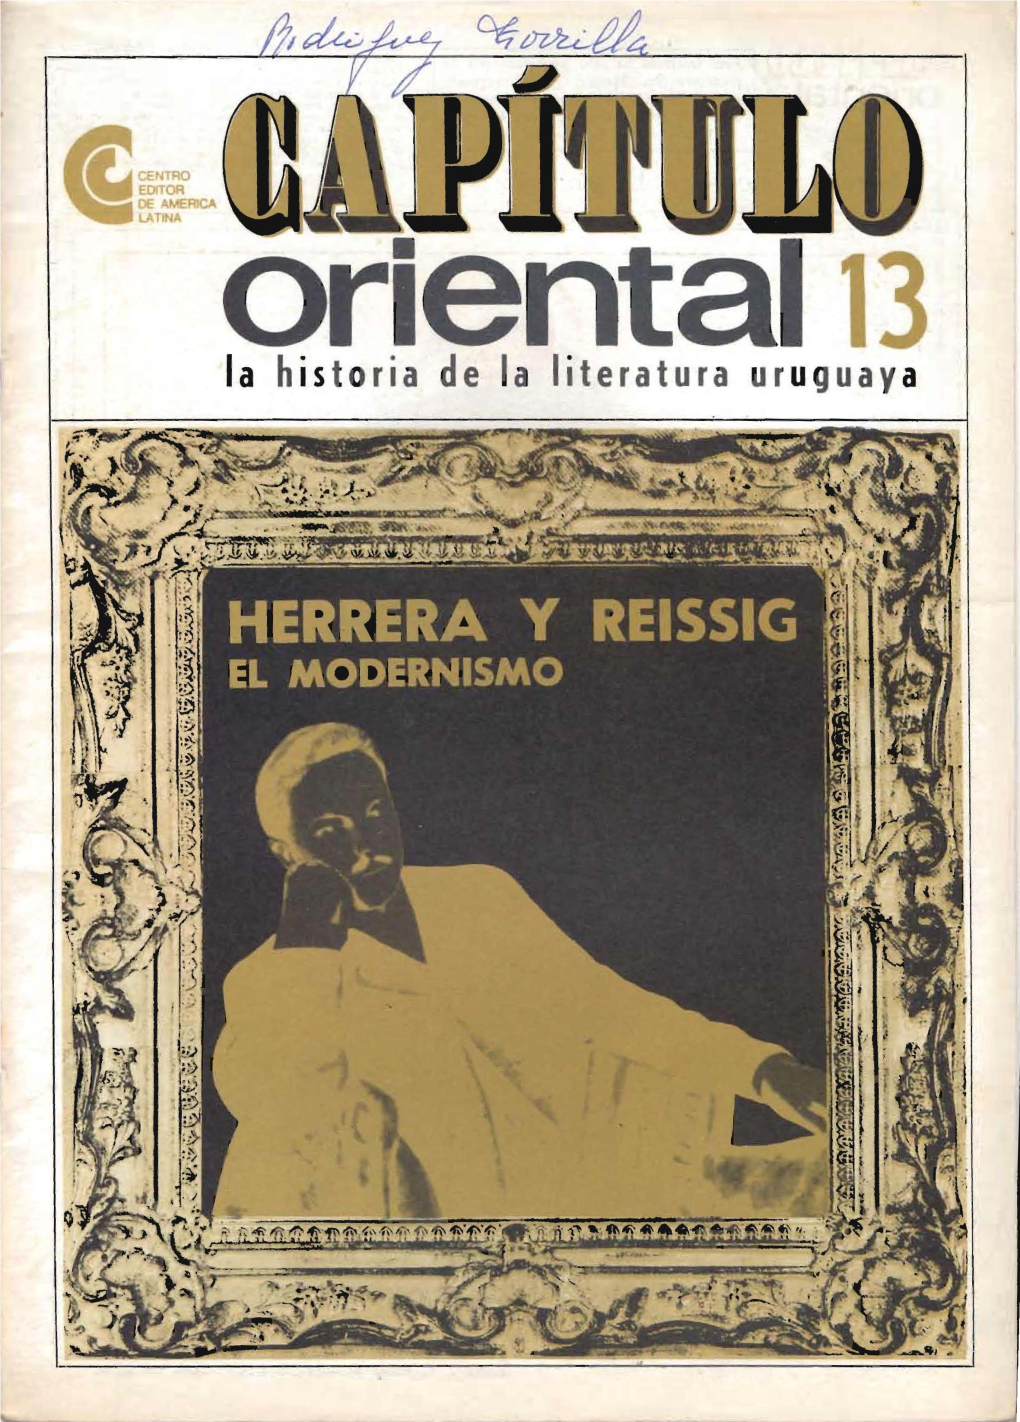 Herrera Y Reissig El Modernismo "Biblioteca Urukuaya Fundaf!Lcl1ta¡"